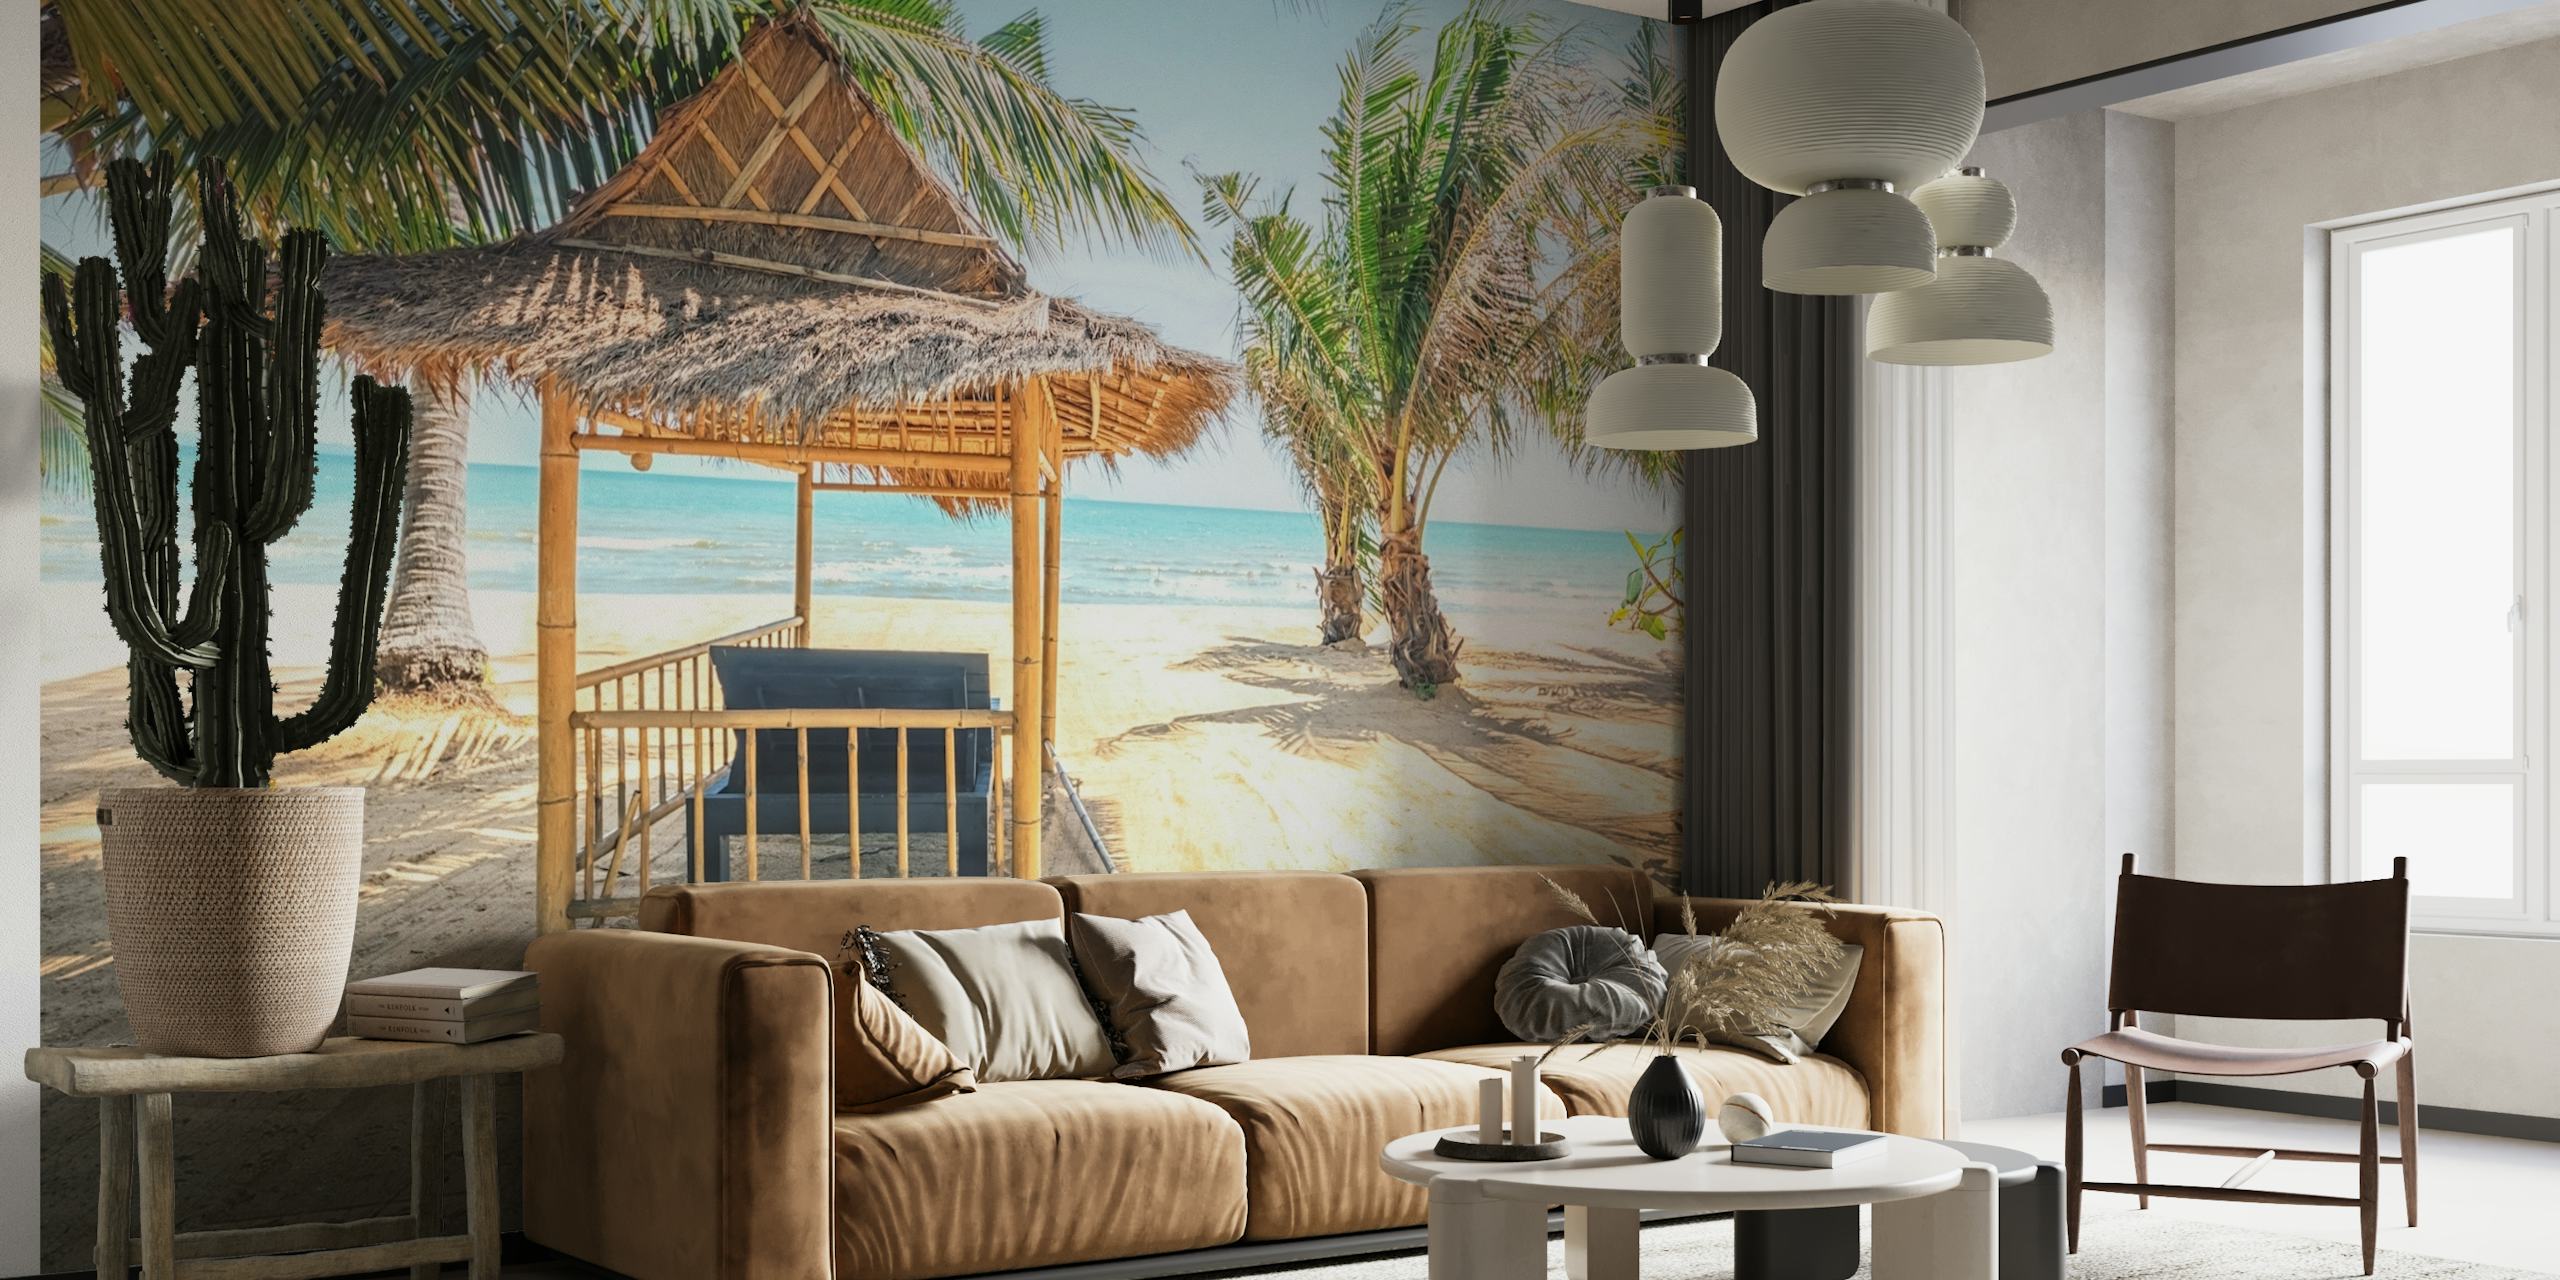 Cabana de palha em uma praia arenosa com palmeiras e fotomural vinílico de parede com vista para o mar